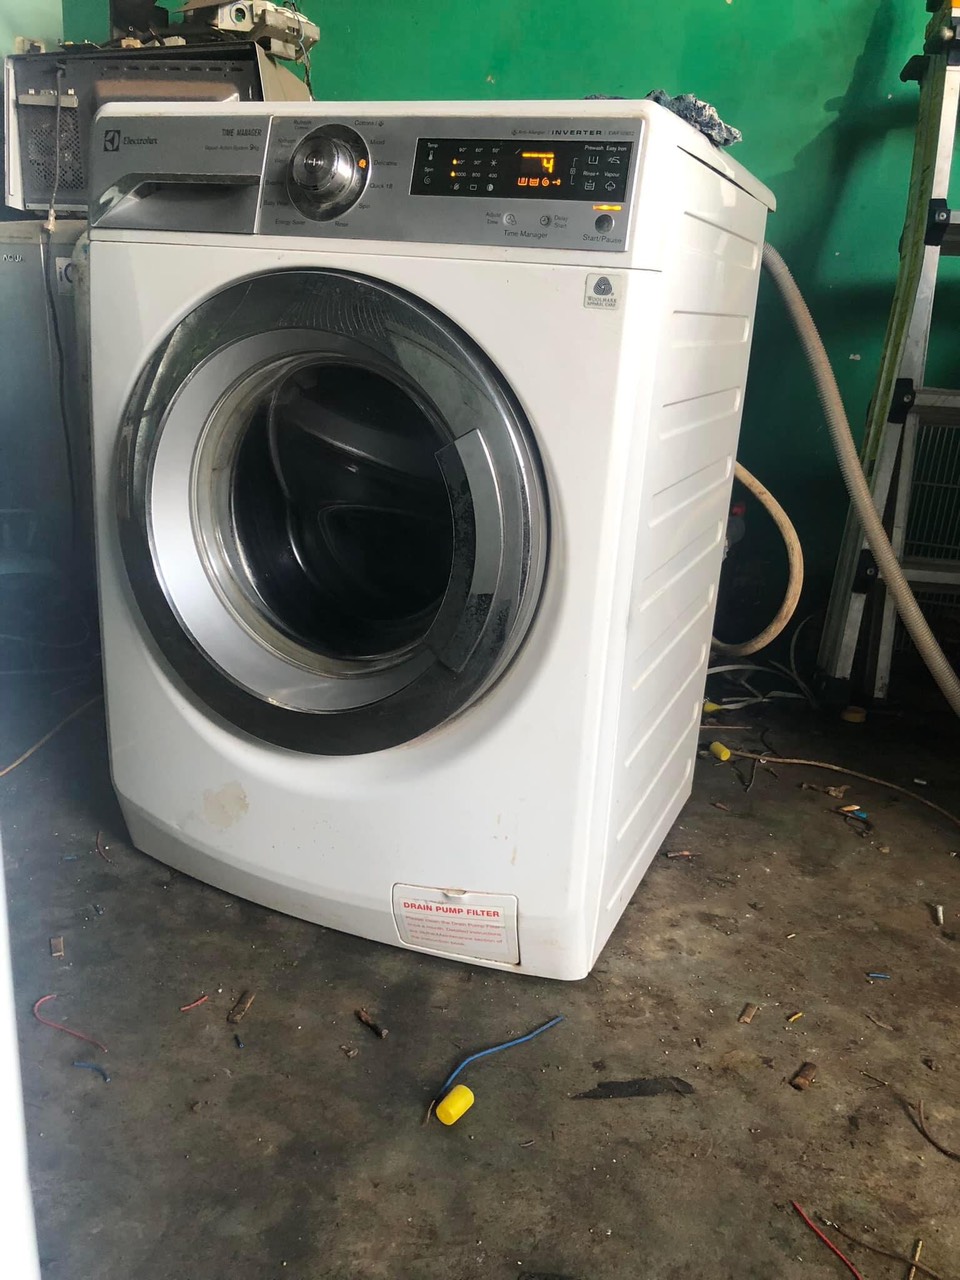 Giới Thiệu Về Dịch Vụ Sửa Máy Giặt Thủ Dầu Một Bình Dương|Sửa máy giặt thủ dầu một bình dương